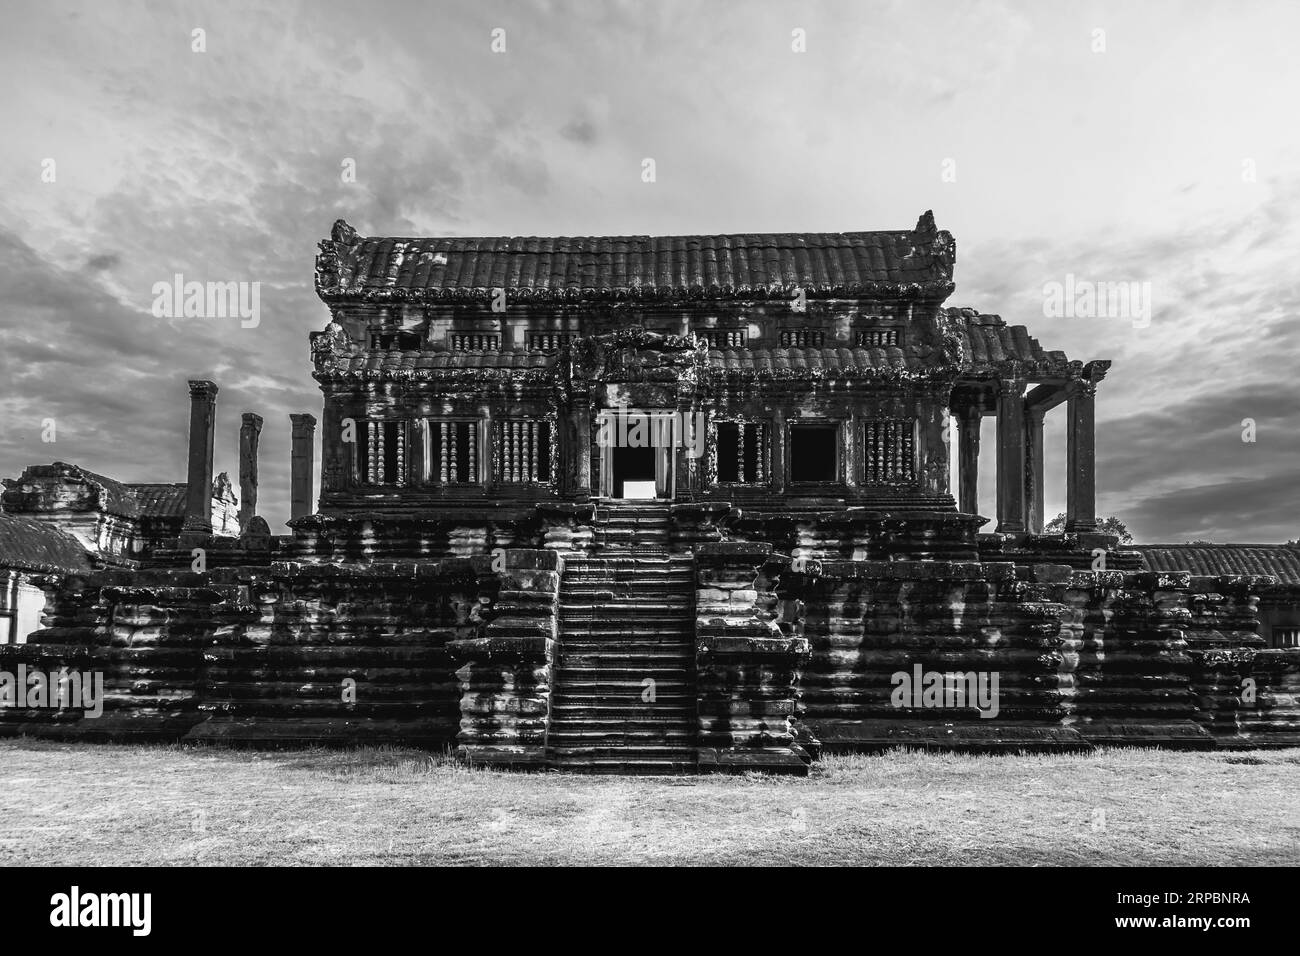 Edificio dentro del complejo del templo Angkor Wat. Foto de stock